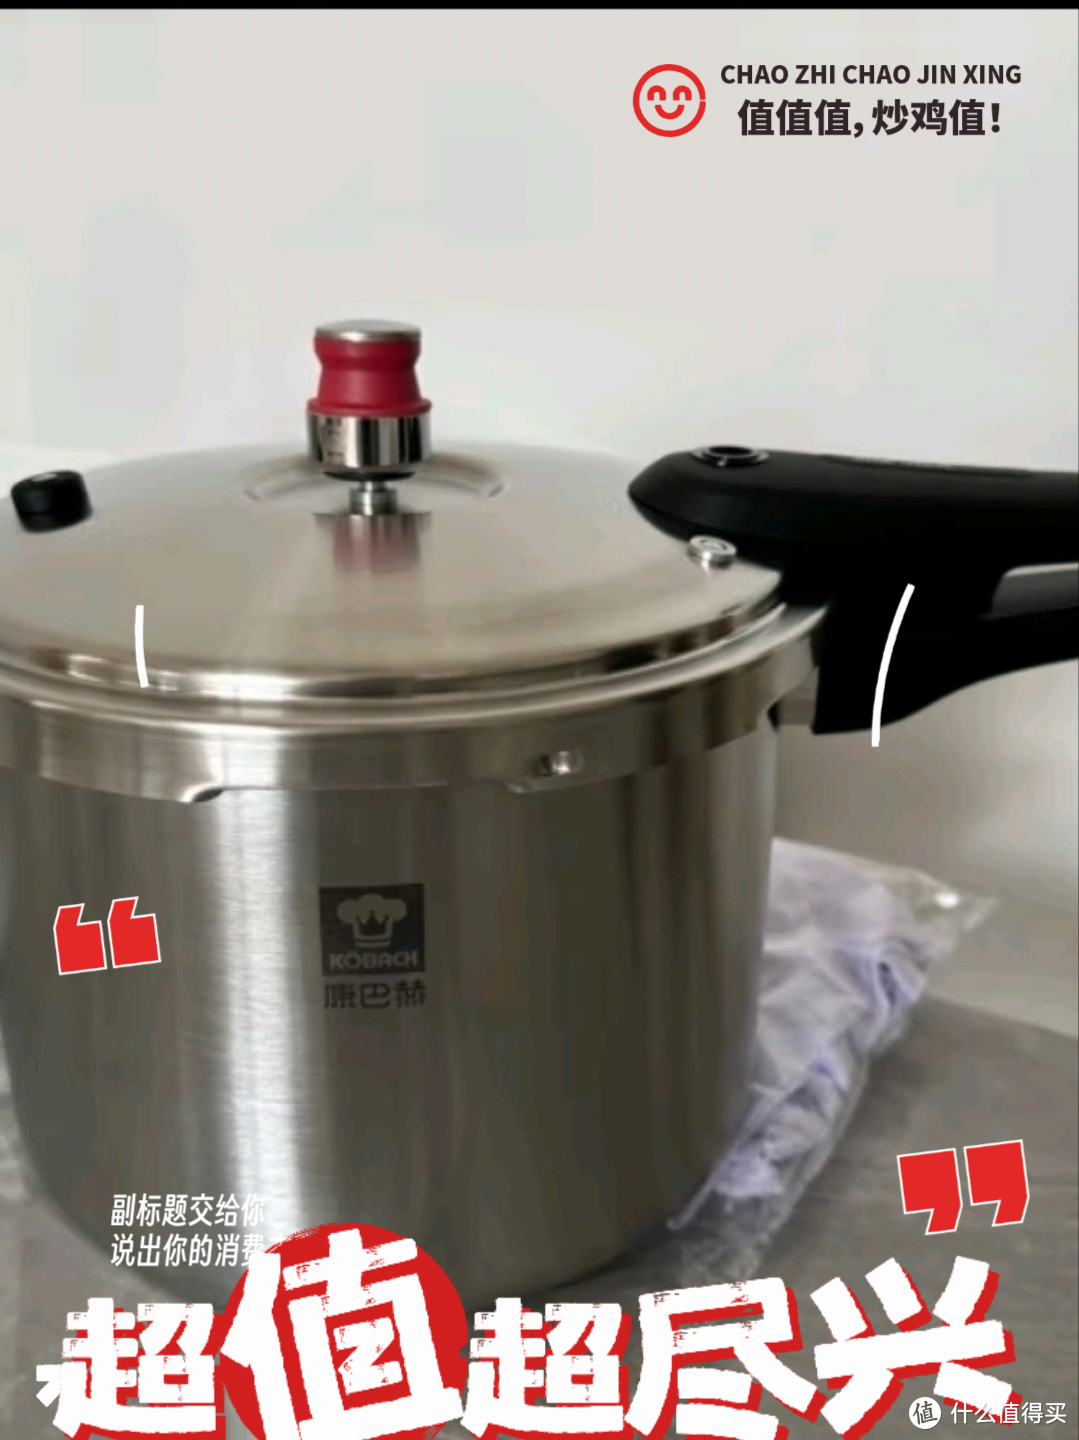 高压锅是每个家庭厨房必备的一口锅具，这款产品是不锈钢材质，安全又可靠